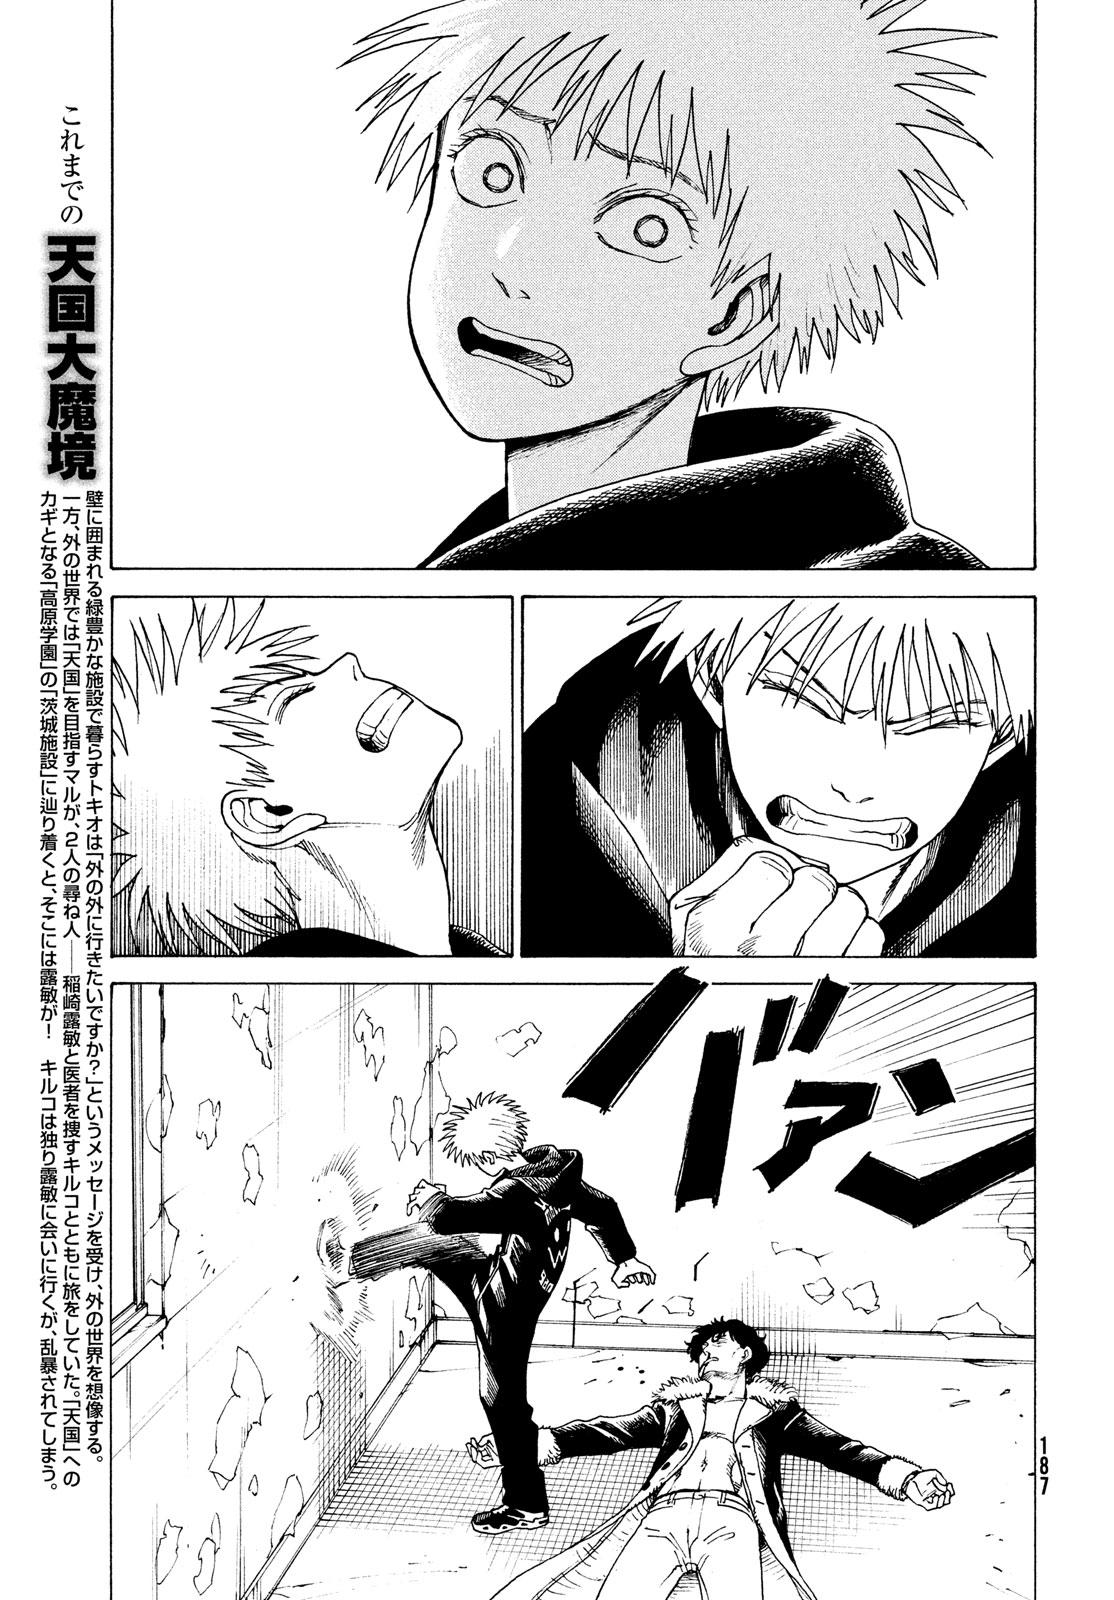 Tengoku Daimakyou Chapter 34: Inazaki Robin ➂ page 3 - Mangakakalot